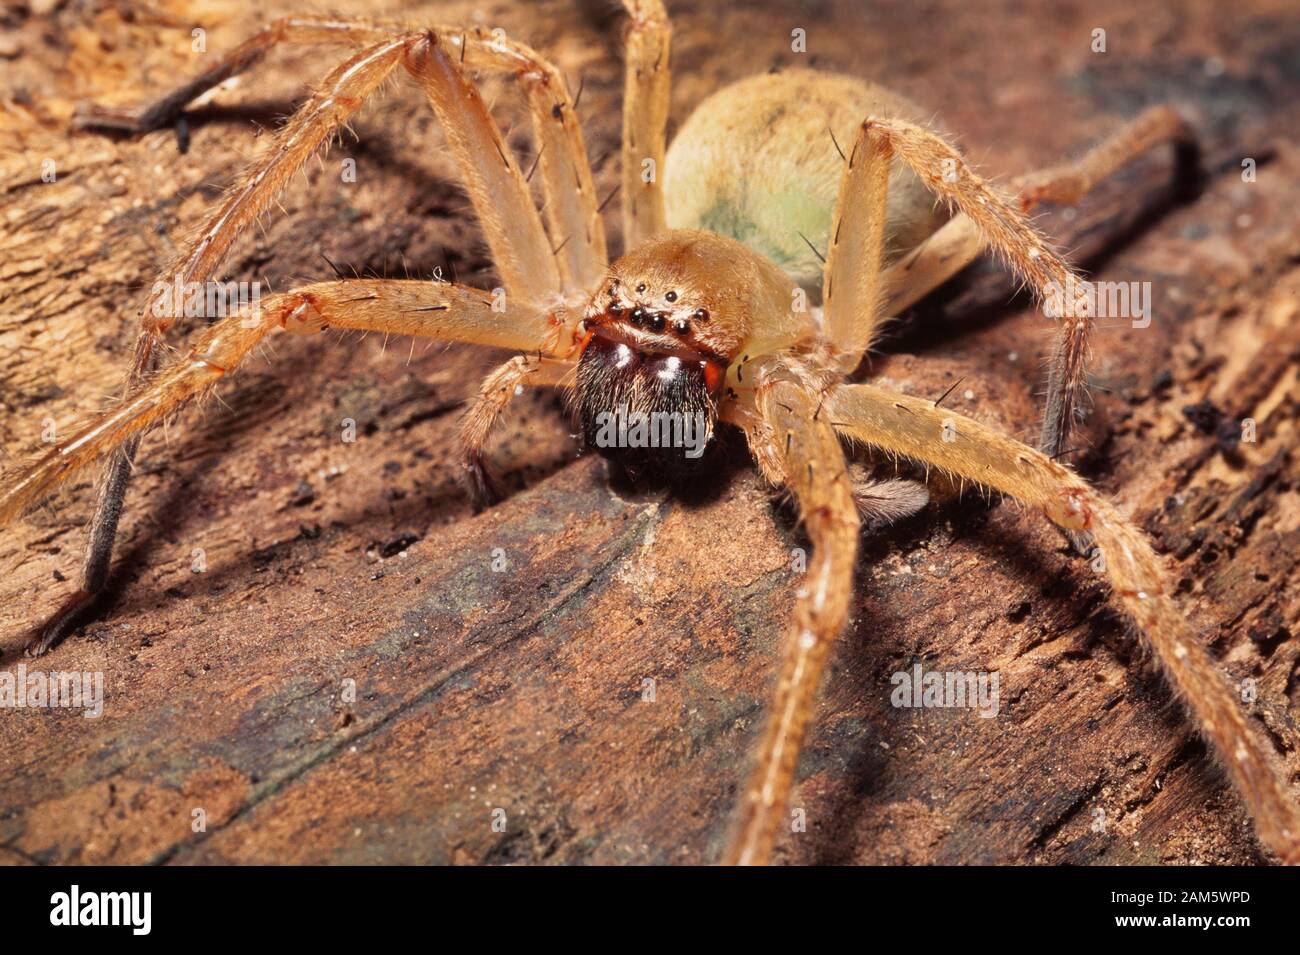 Un crabe araignée, araignée Huntsman. Politique au Moyen-Orient Banque D'Images